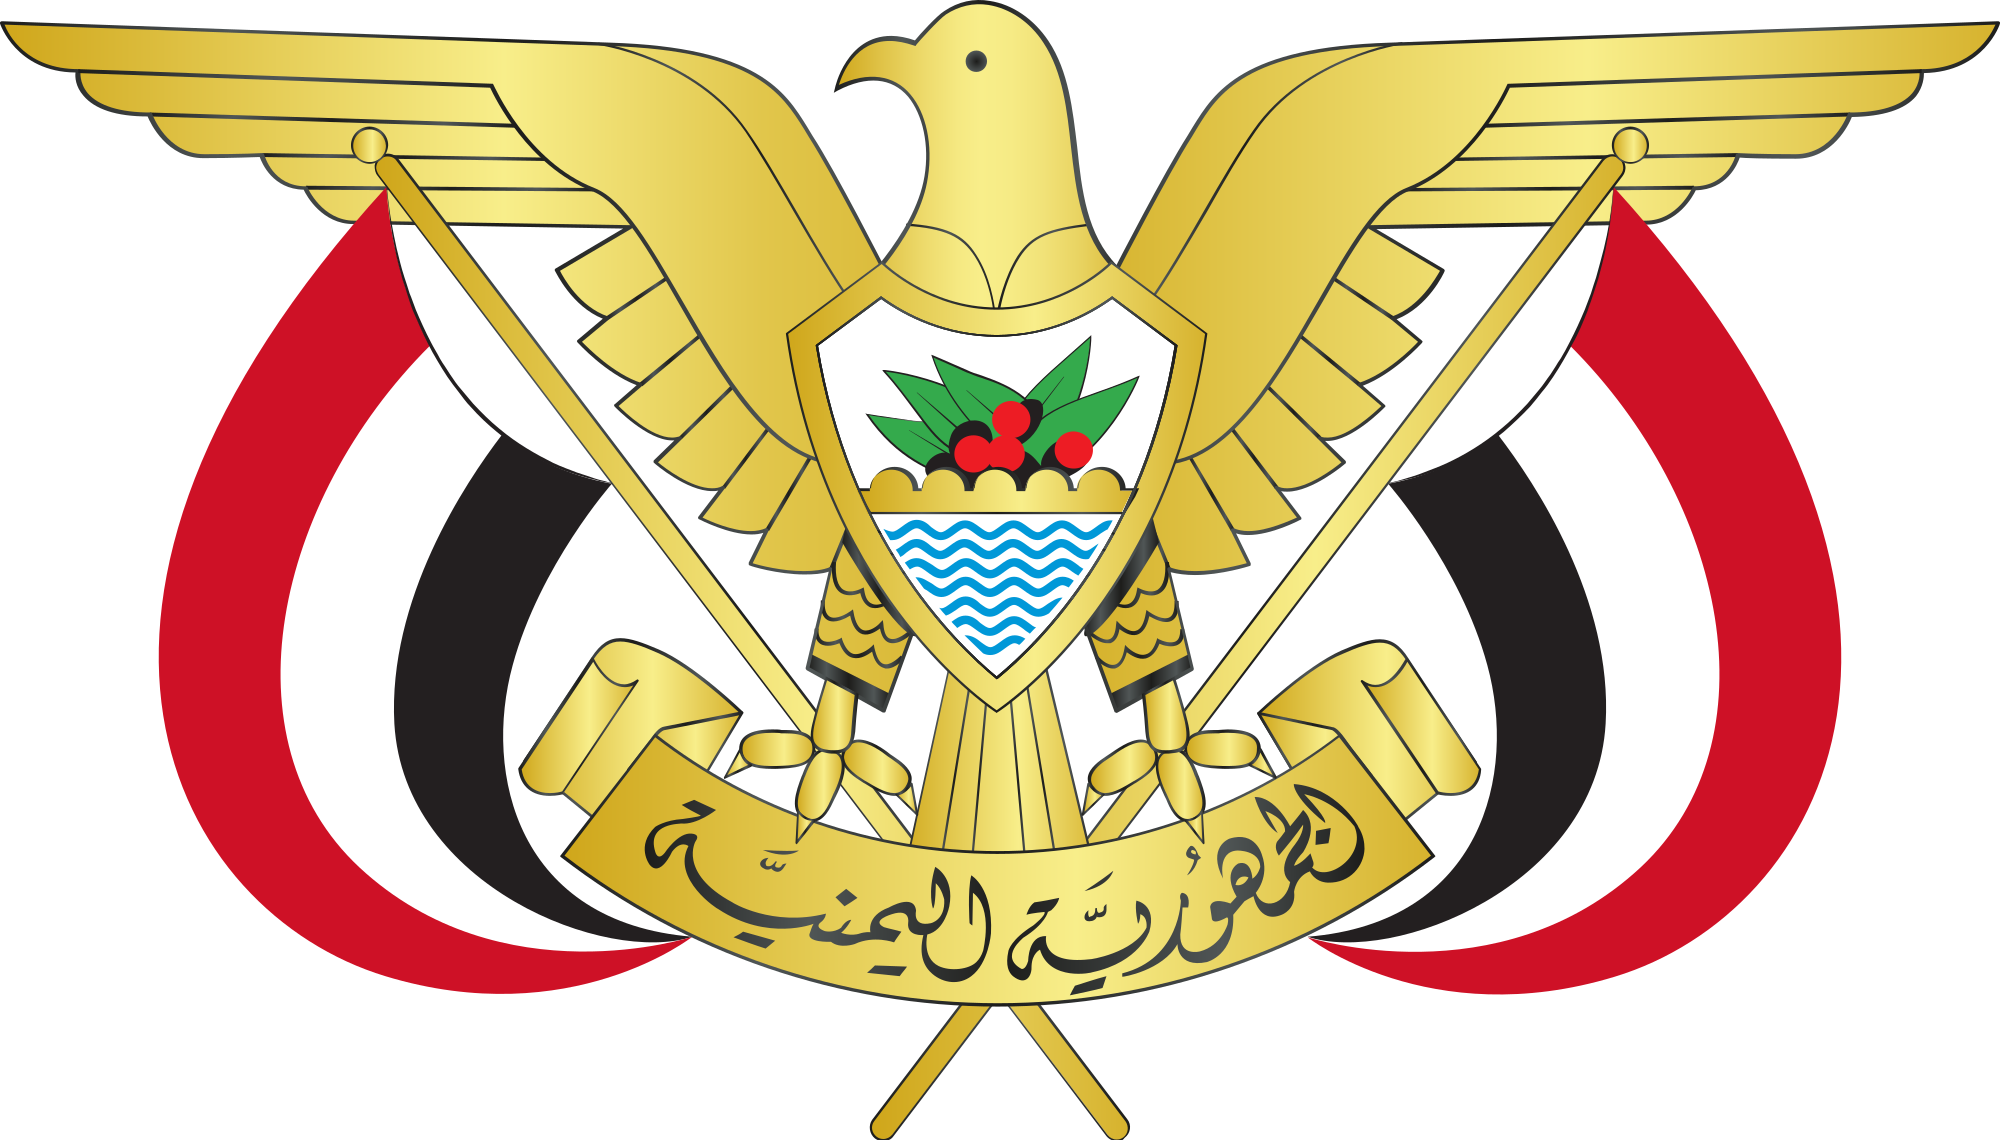 رئيس الوزراء على قناة اليمن الفضائية في الساعة 8 مساء .. يكشف أولويات حكومة الكفاءات السياسية الجديدة وأبرز محددات وملامح برنامج عملها خلال المرحلة المقبلة